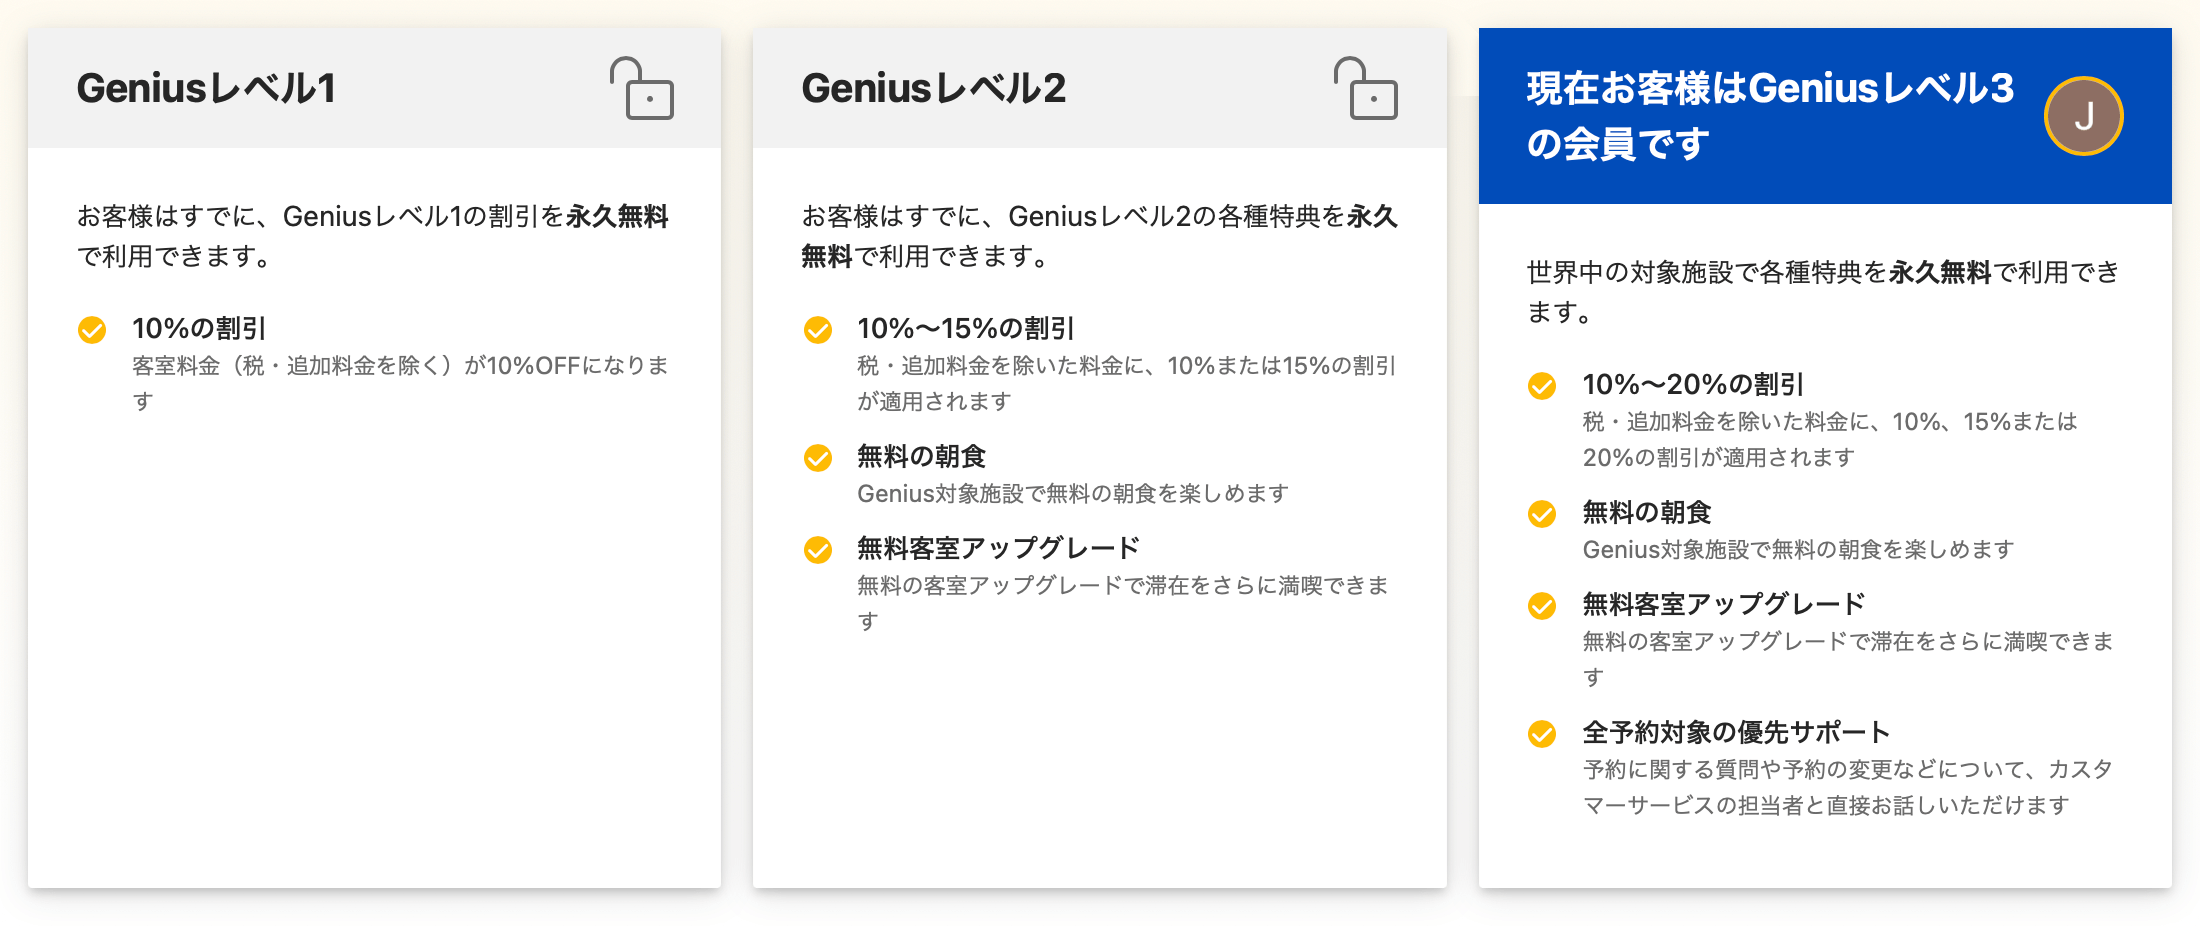 Booking.comのGenius各レベルの特典表